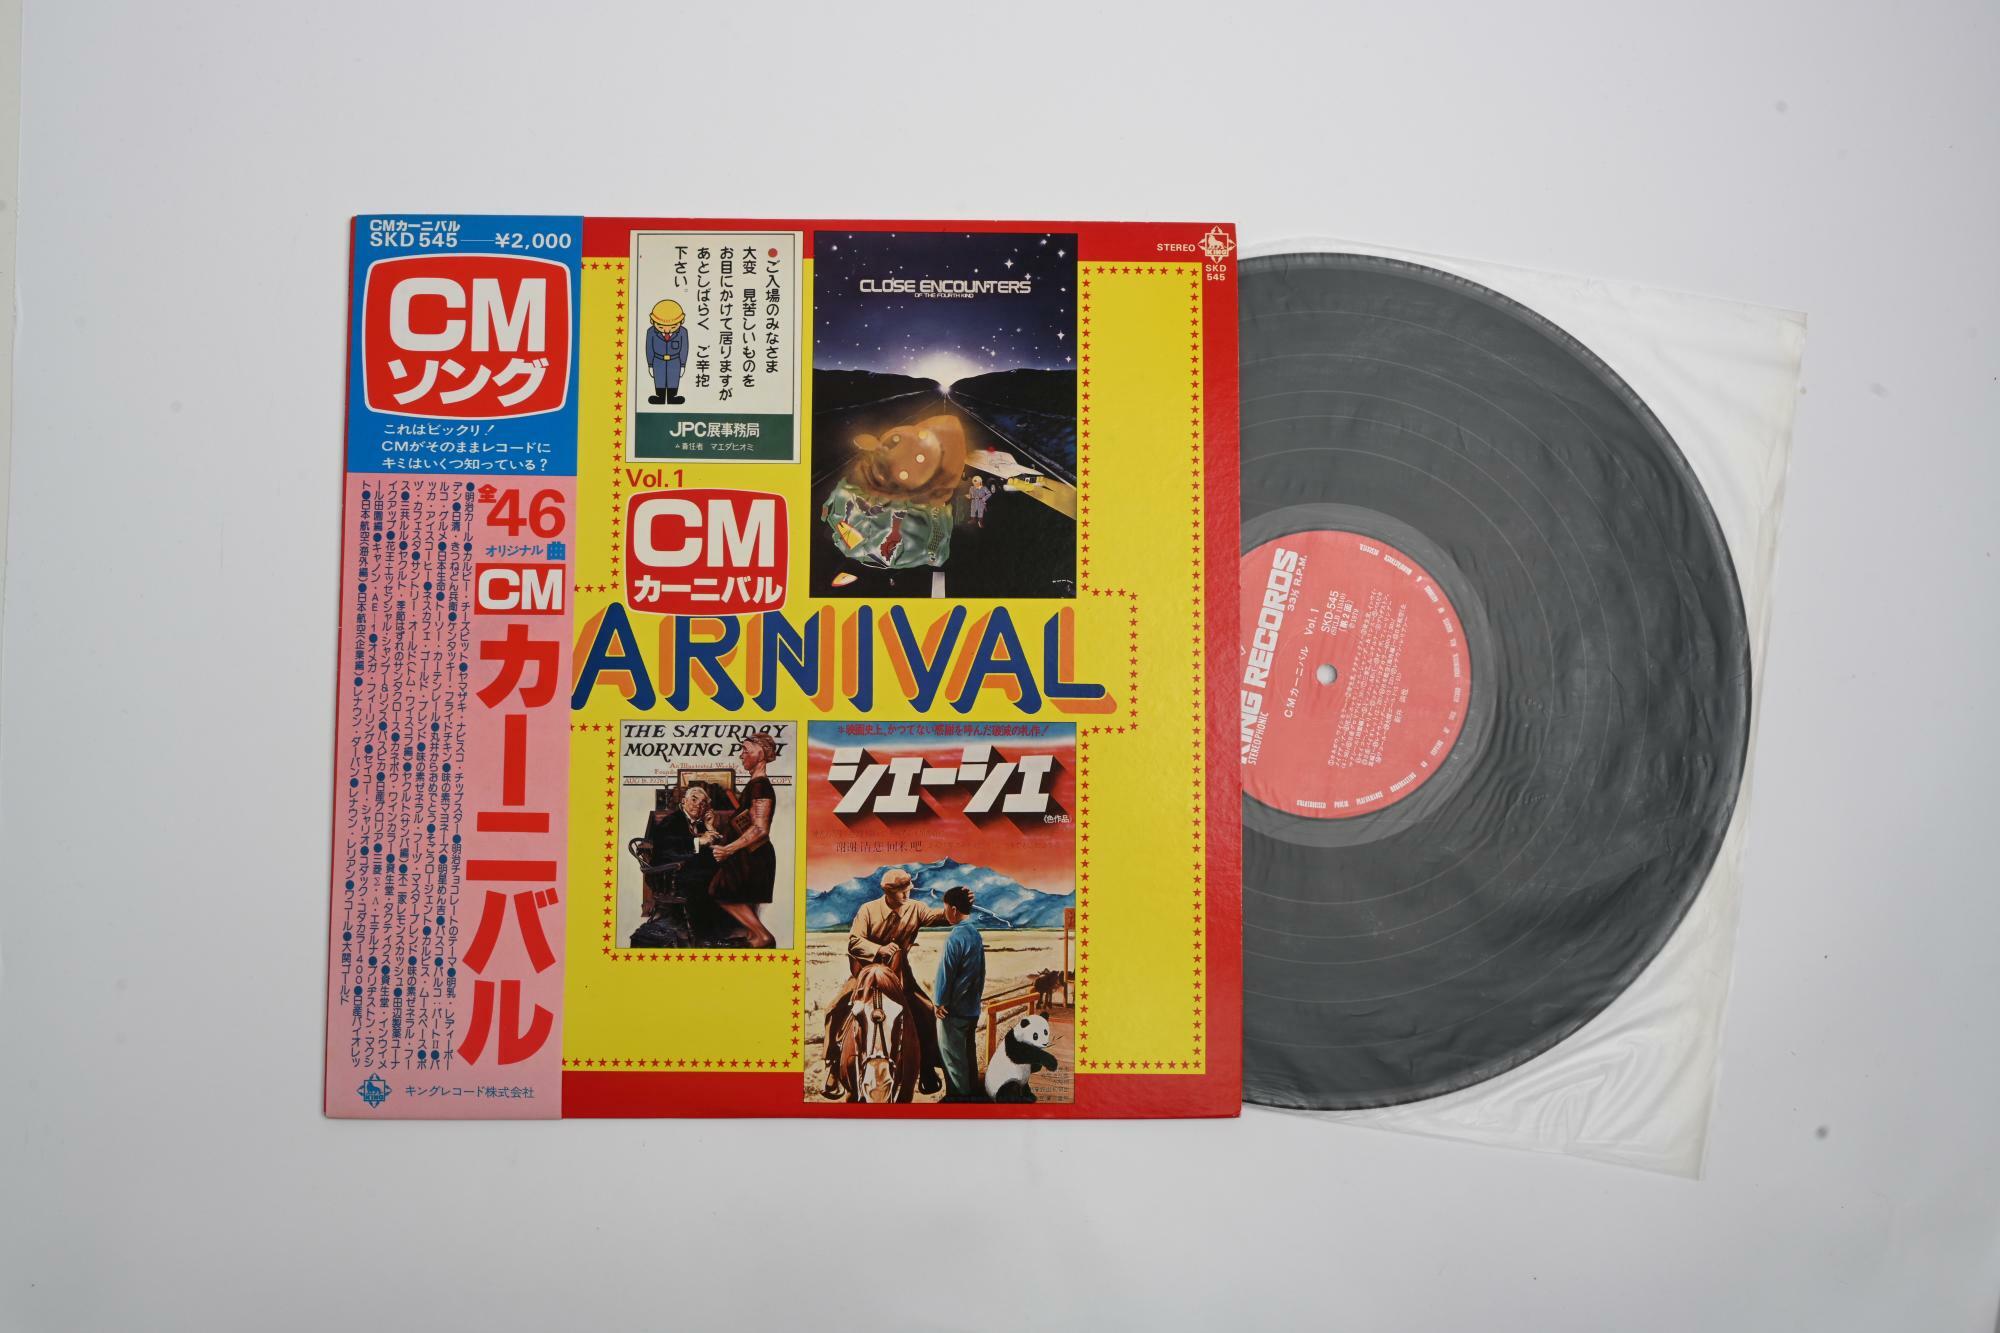 「レディーボーデン」のCM曲が収録されている「CMカーニバル Vol.1」